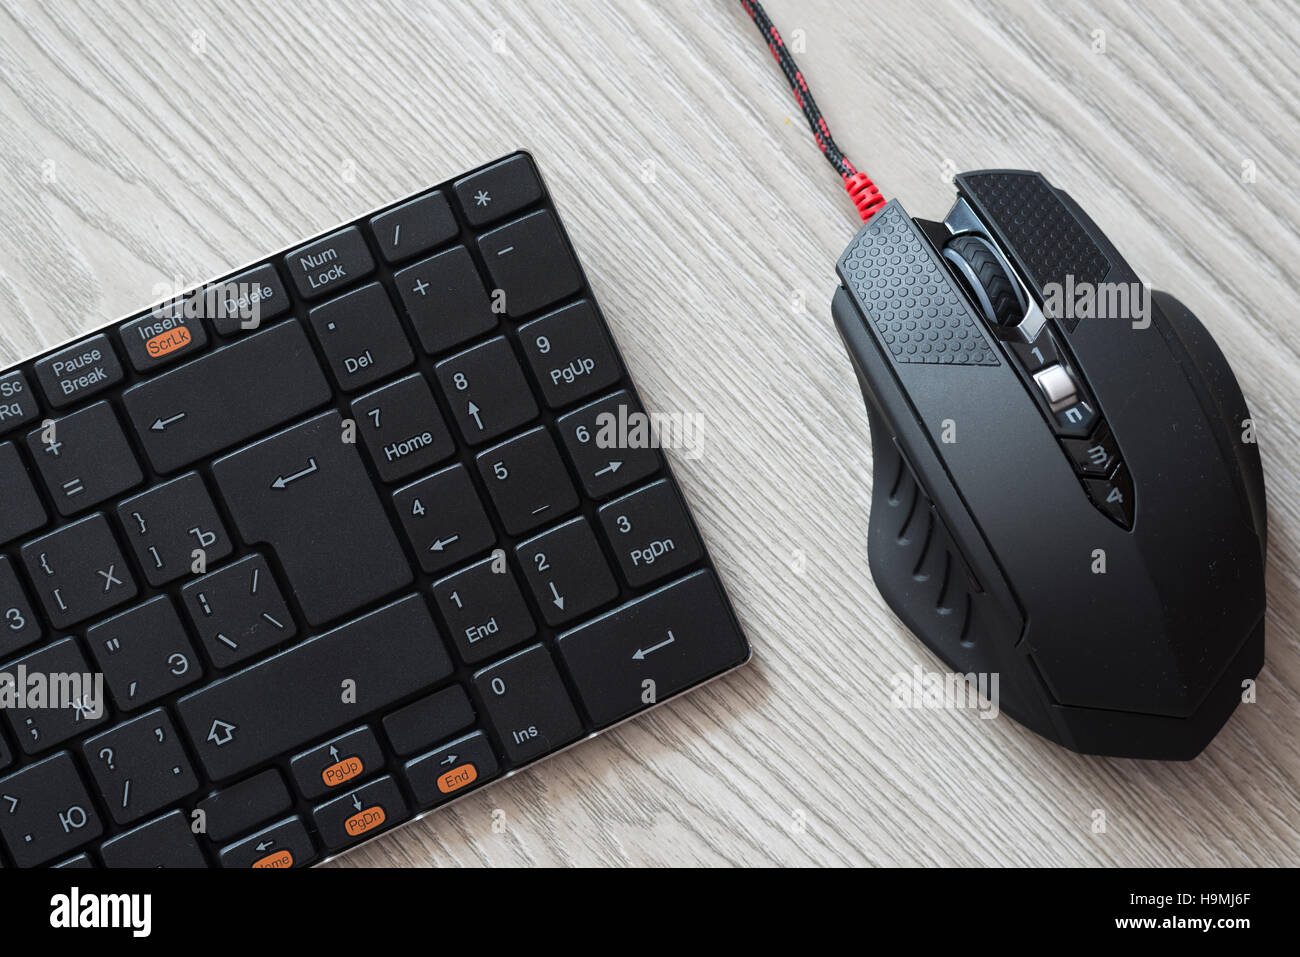 Vista superiore del calcolatore nero mouse e tastiera con inglese e lettere in russo Foto Stock